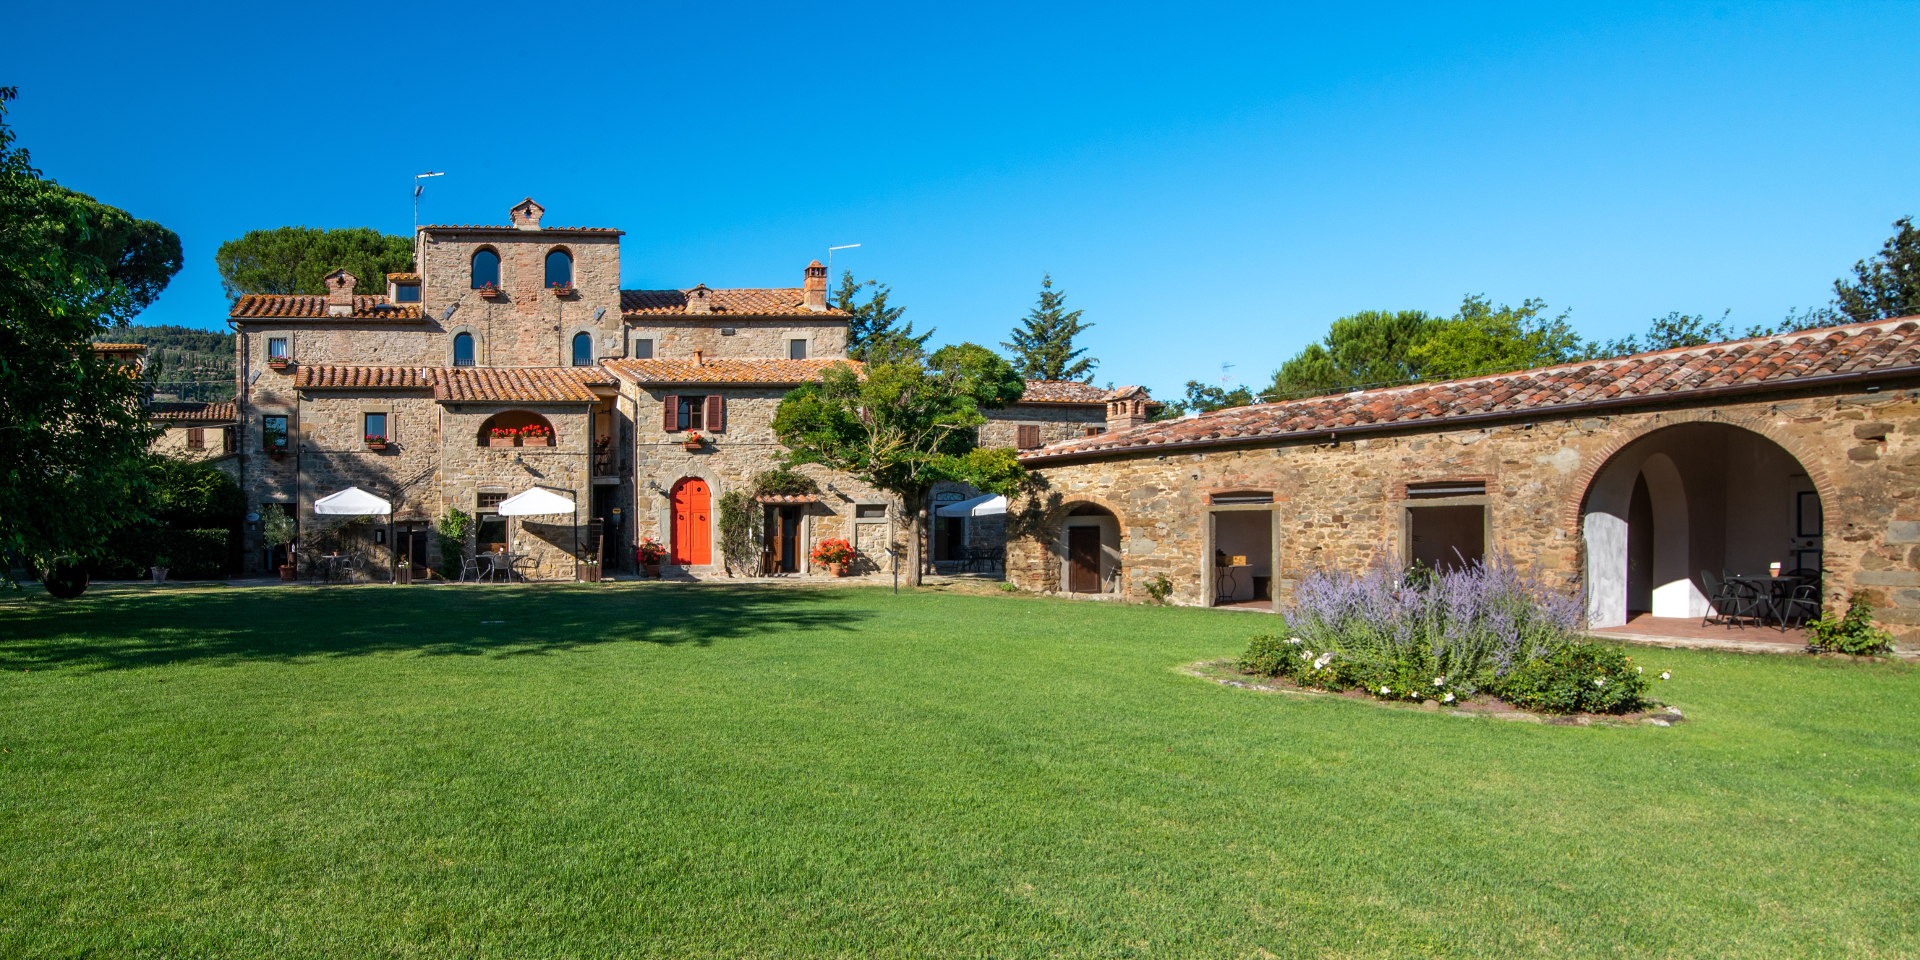 Picture 1: Overview of Farmhouse Monastero San Silvestro in Cortona, Tuscany, Italy